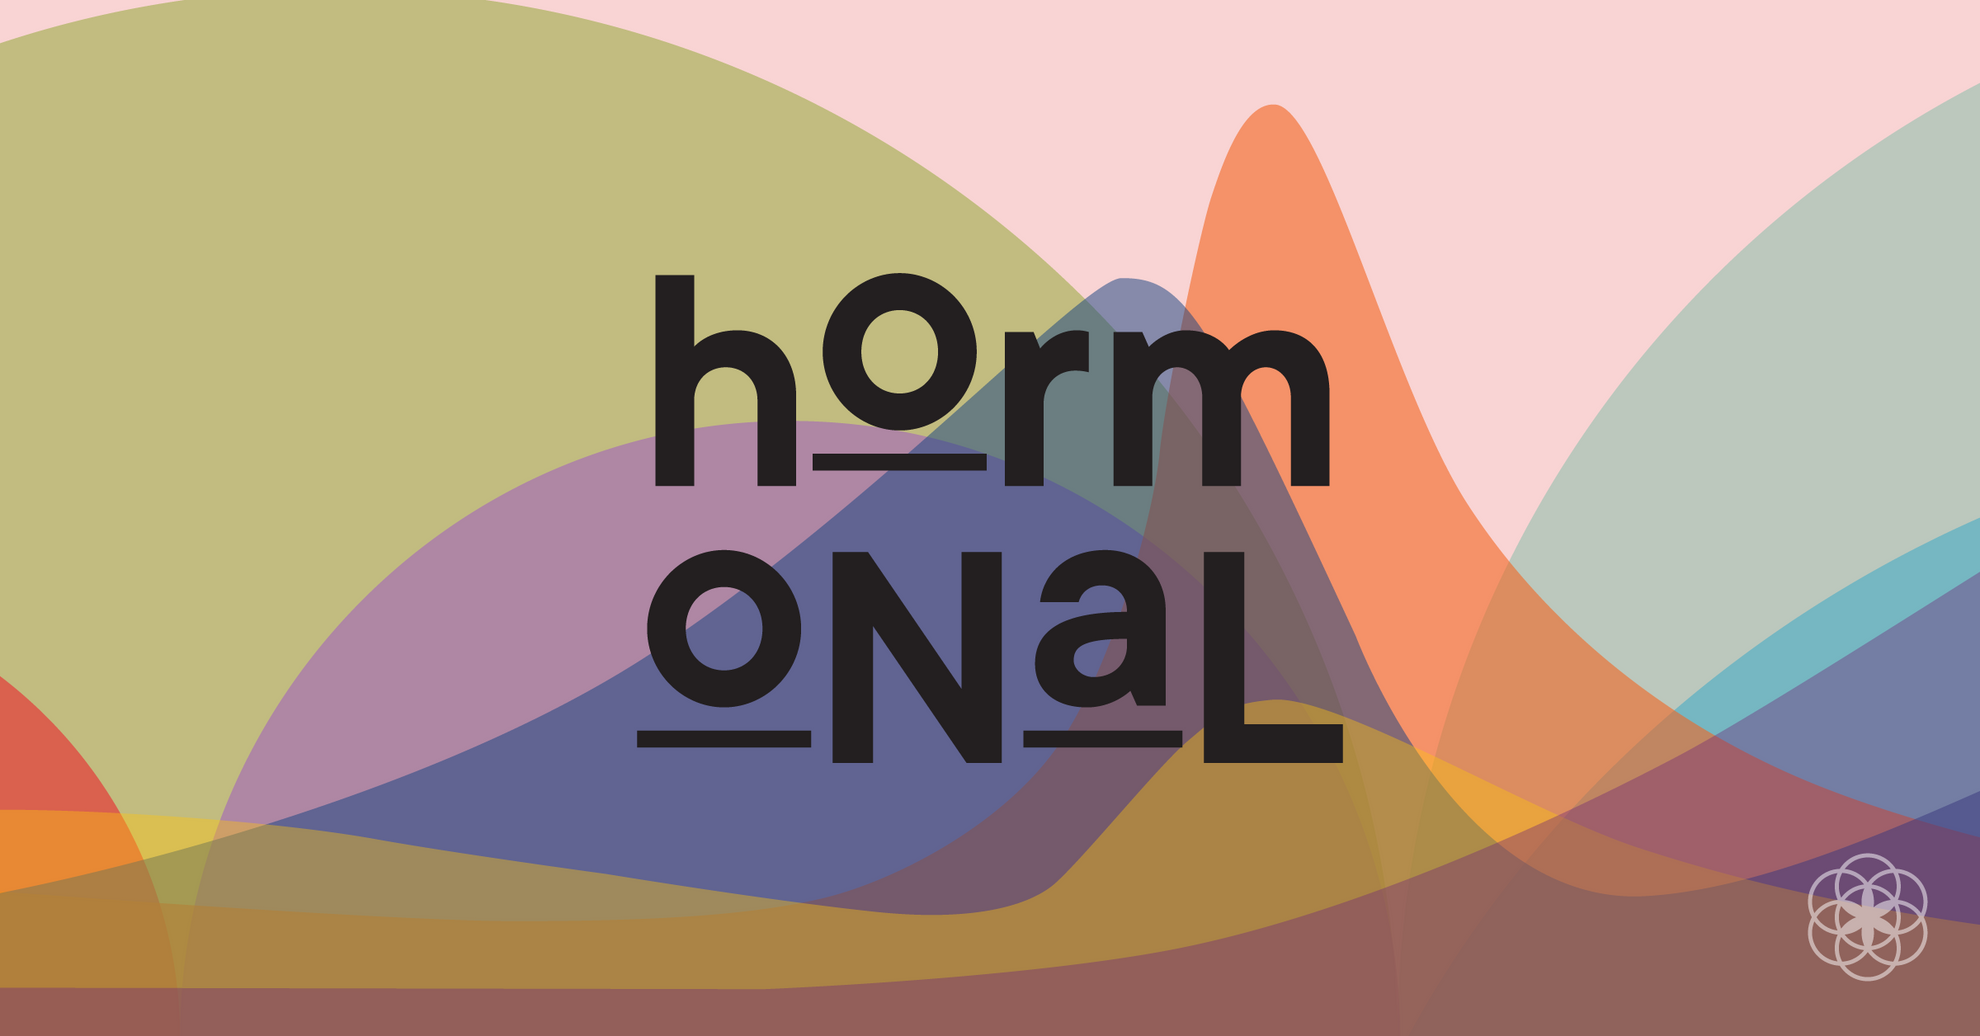 hormonal podcast logo clue